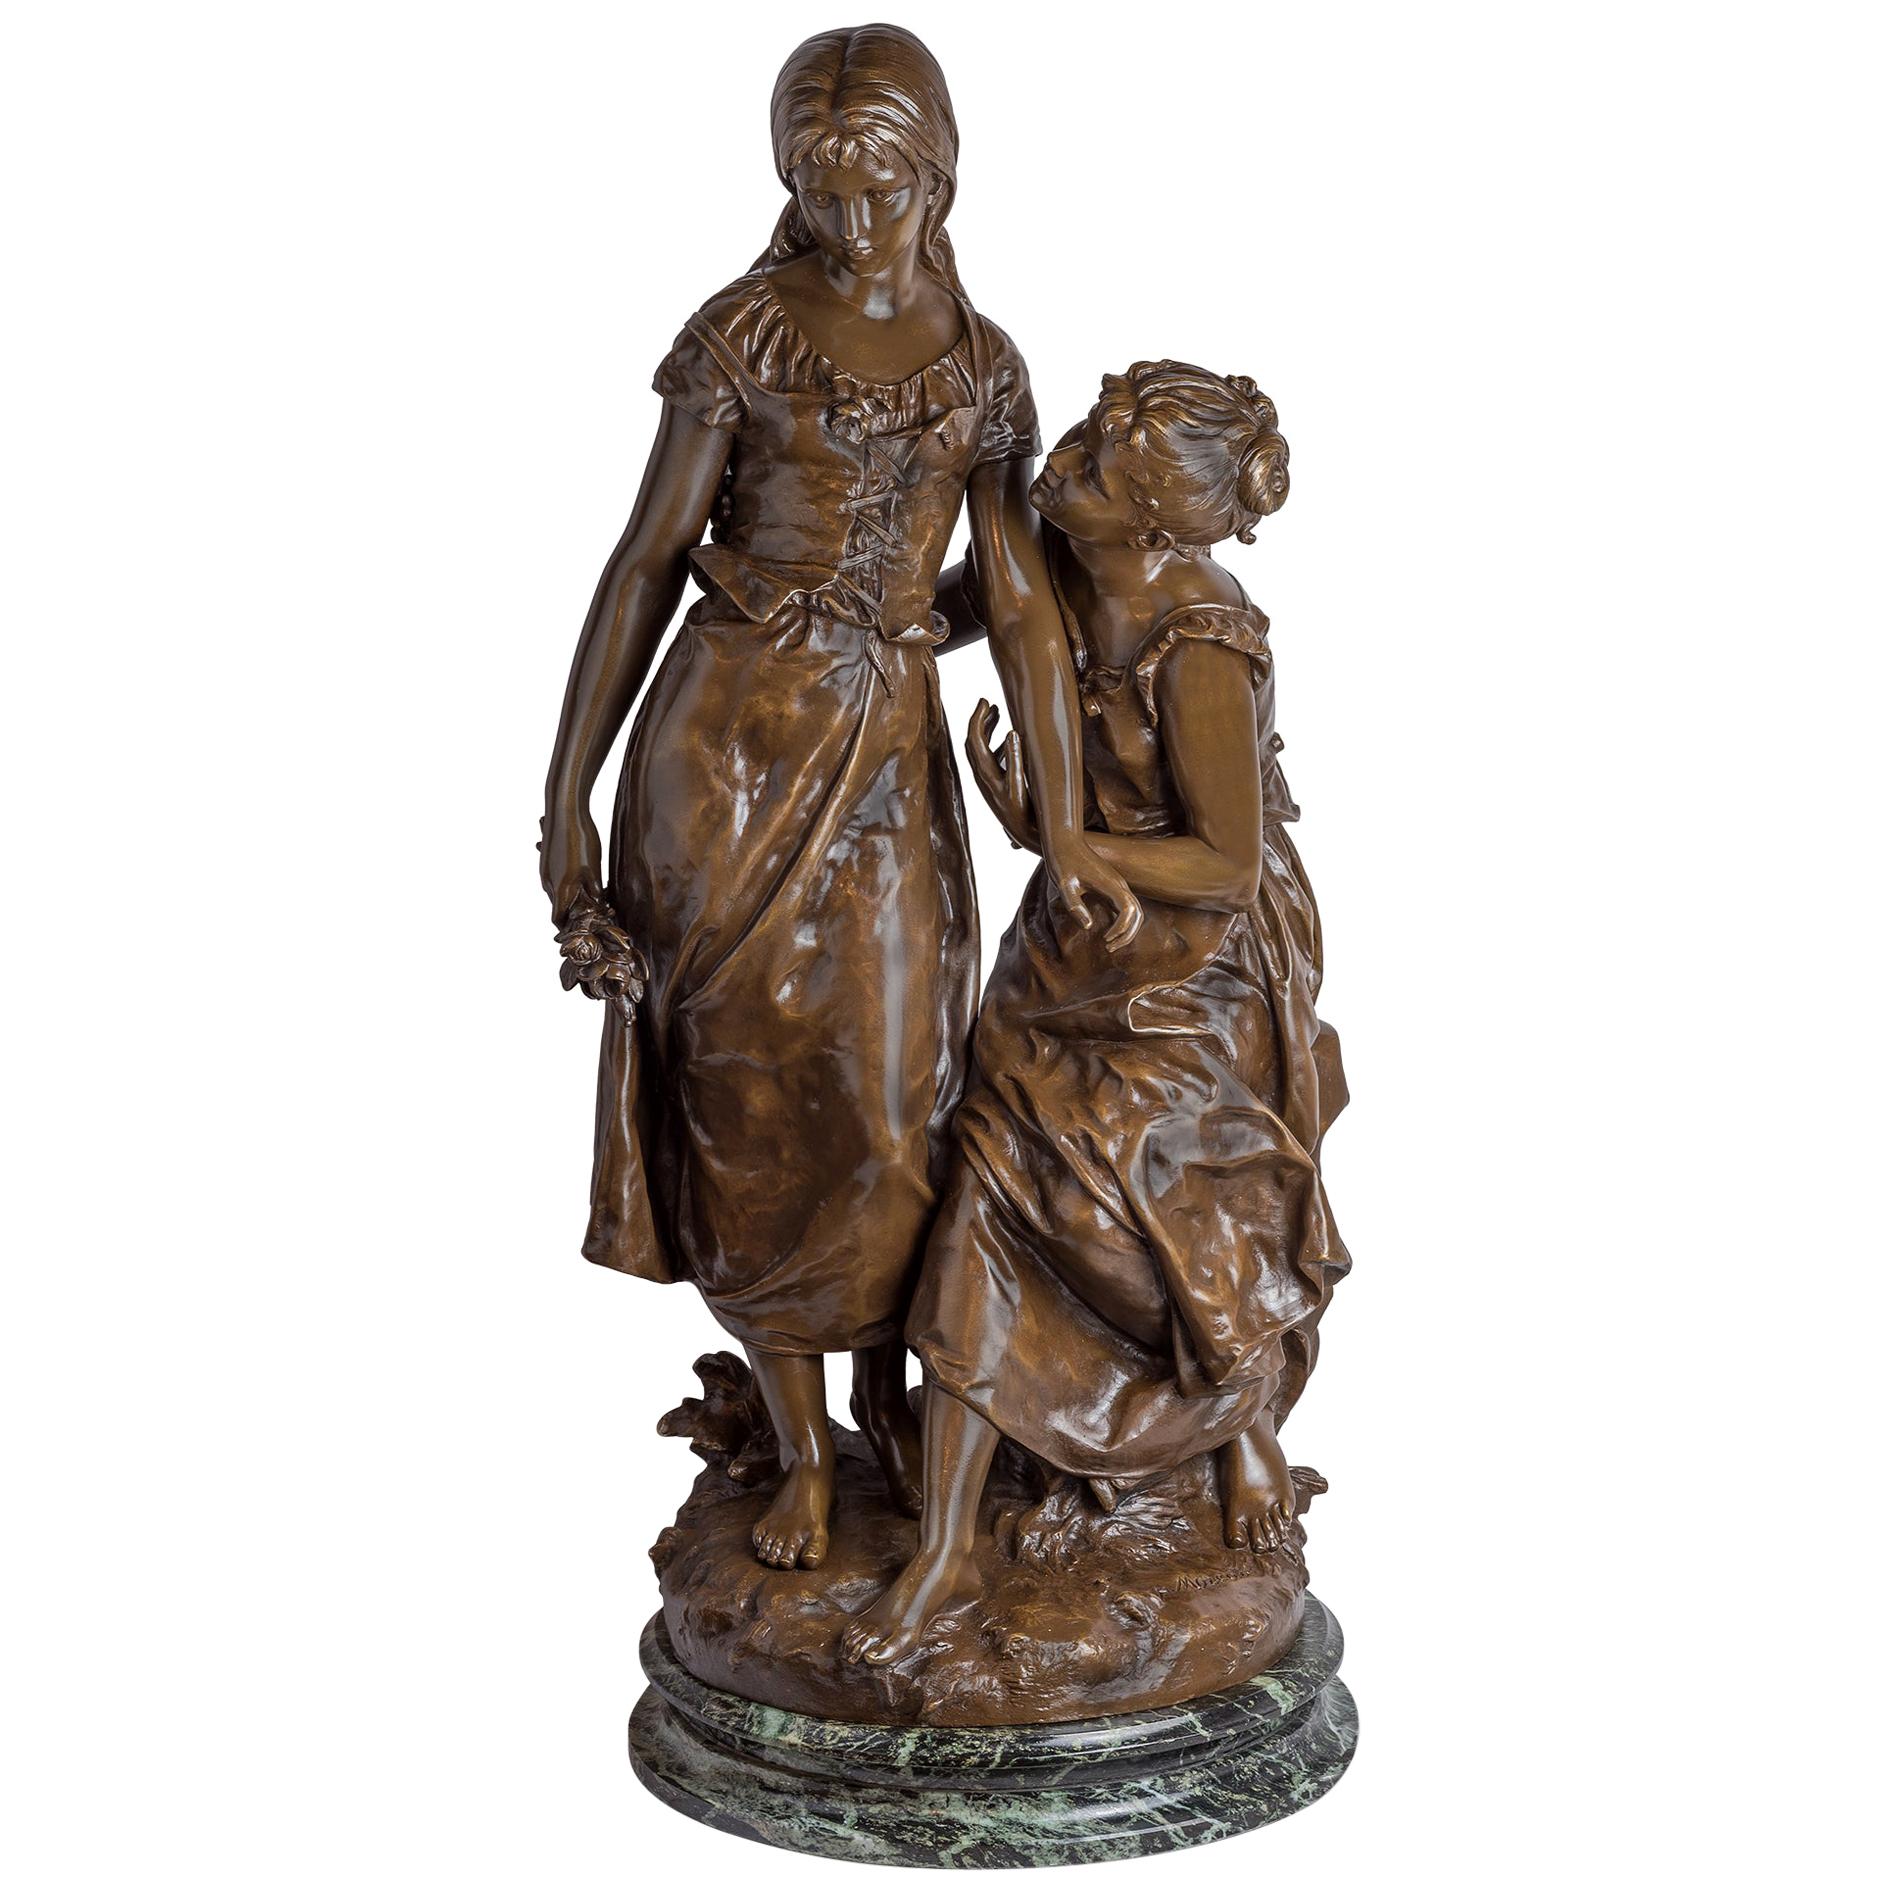 Patinierte Bronzeskulptur zweier Beauties aus dem 19. Jahrhundert von Hippolyte Moreau